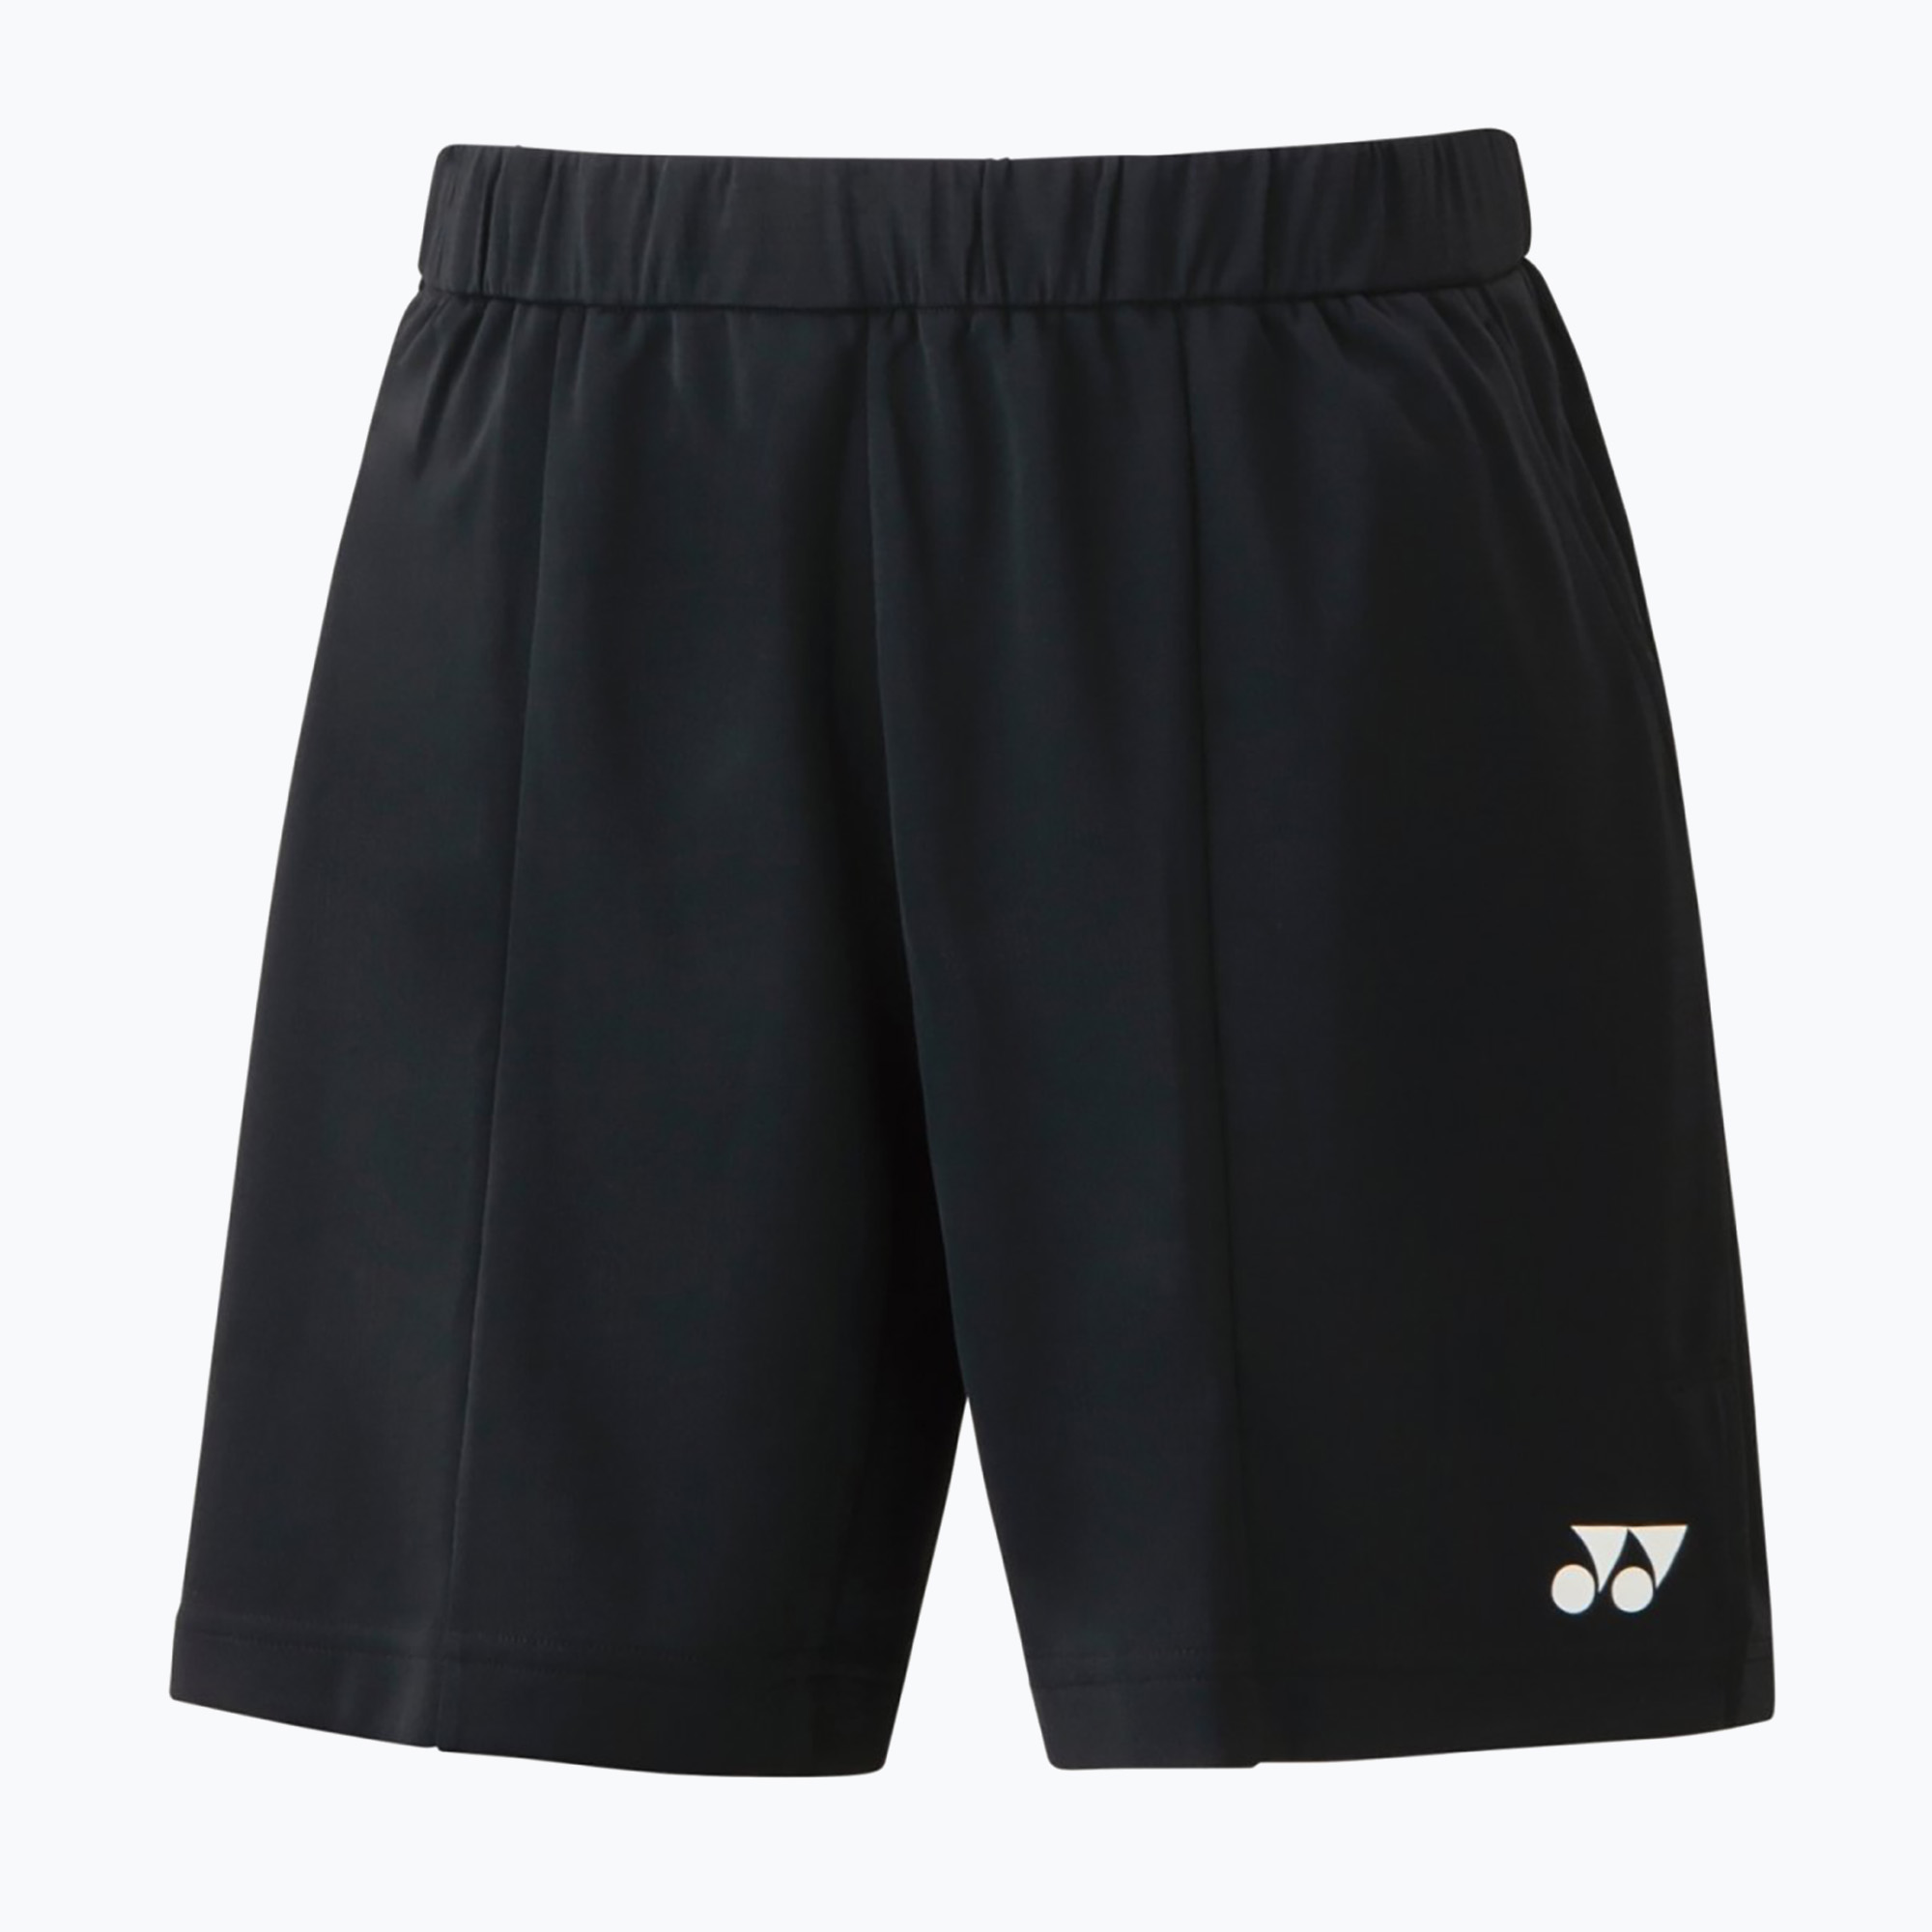 Pánske tenisové šortky YONEX Knit black CSM151383B